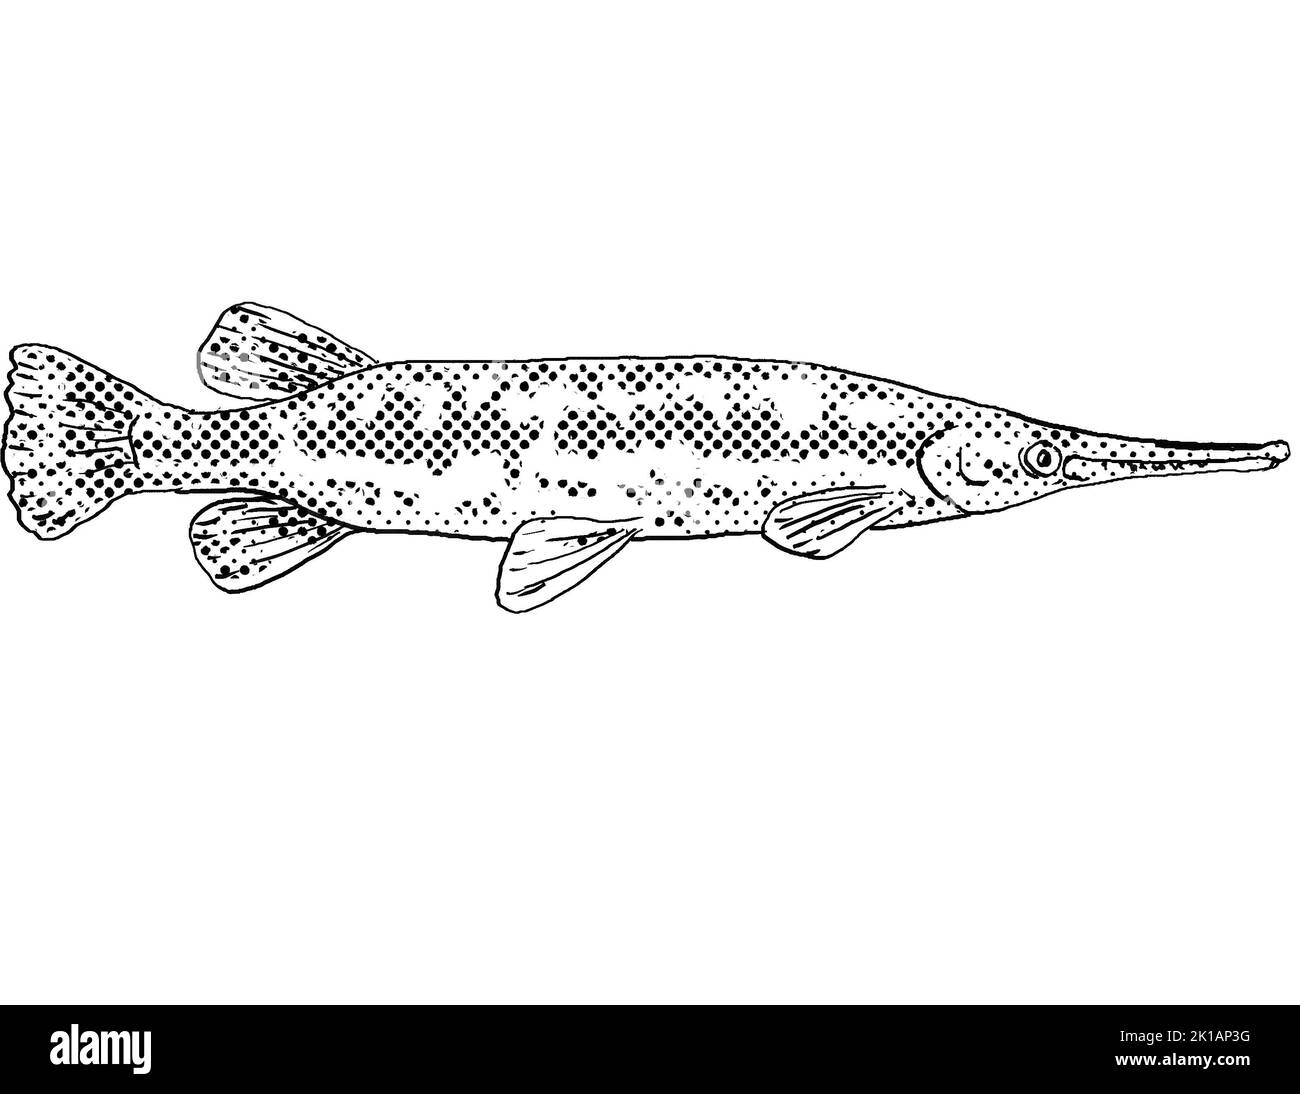 Dessin de style caricature d'un lépisosseus longnose, d'un garbrochet longnose ou d'un billy gar poisson d'eau douce endémique à l'Amérique du Nord avec demi-tonne Banque D'Images